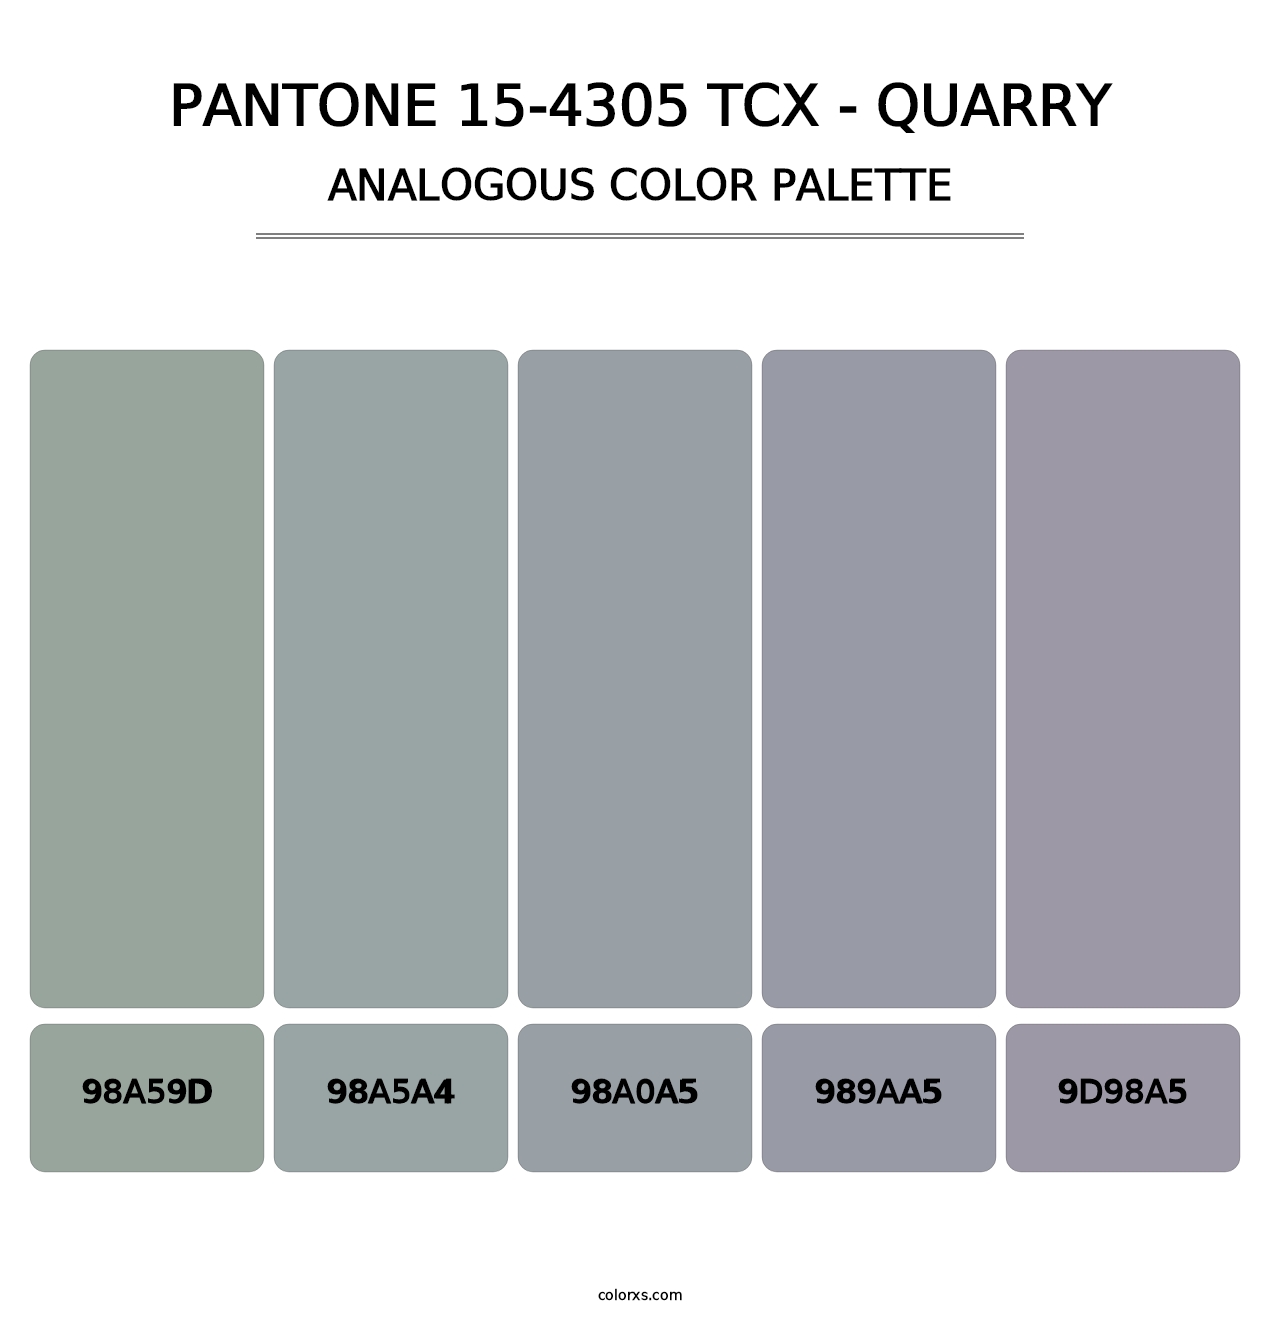 PANTONE 15-4305 TCX - Quarry - Analogous Color Palette